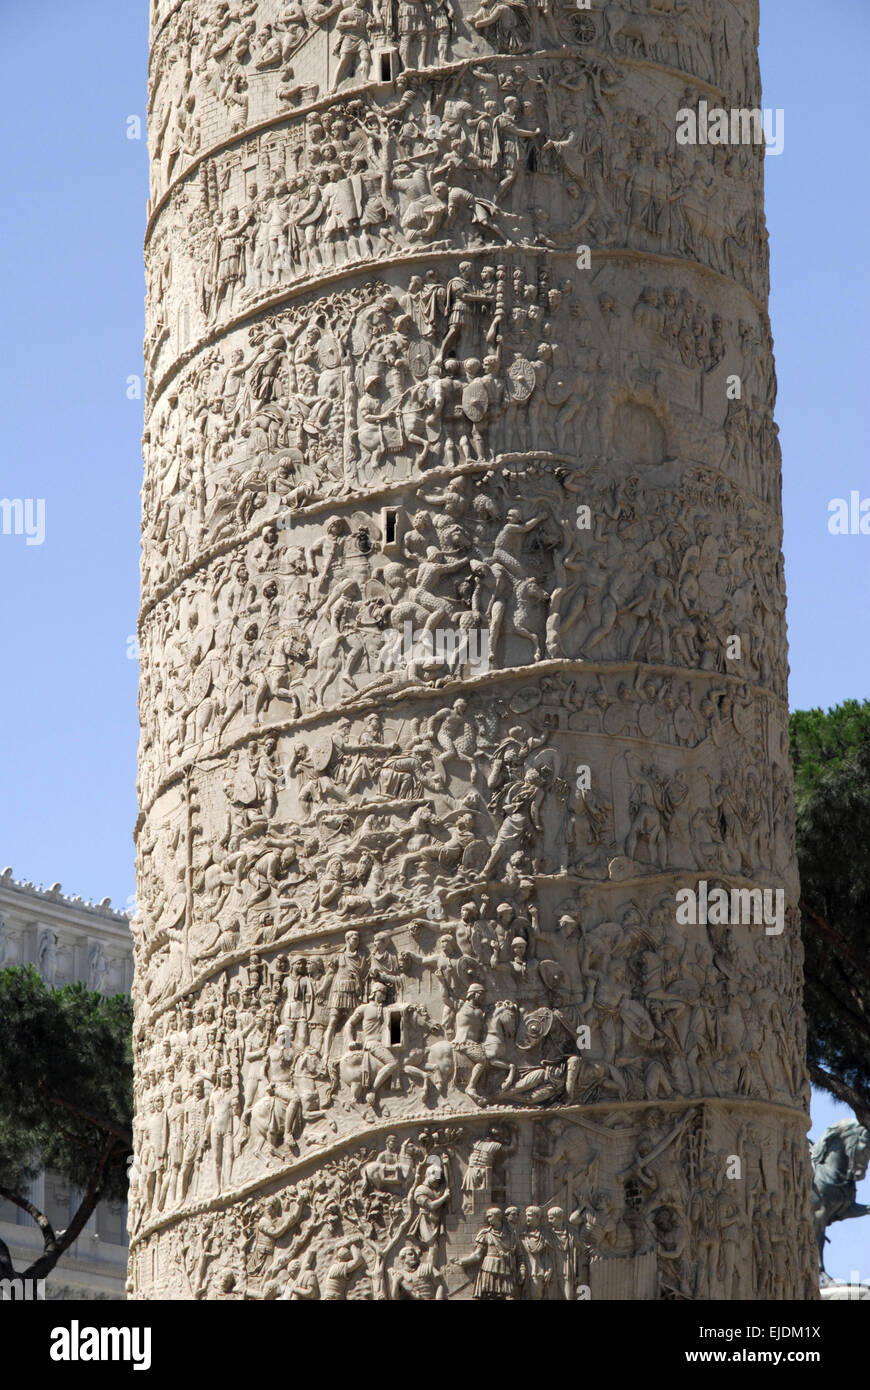 Dettaglio della Colonna di Traiano, Fori Imperiali di Roma. Foto Stock